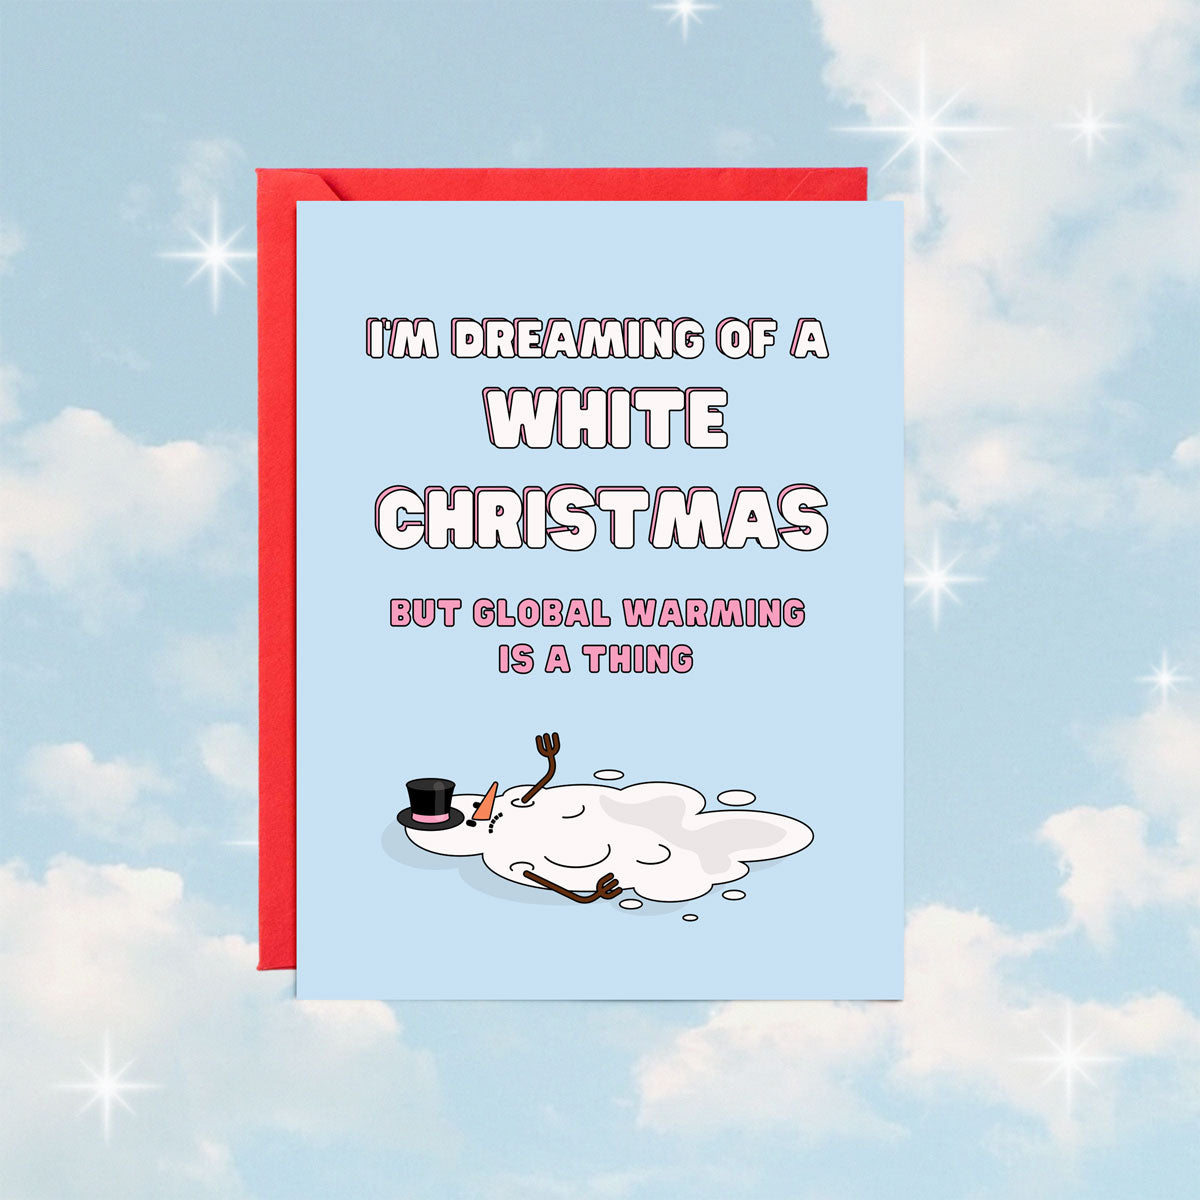 Global Warming Christmas Card